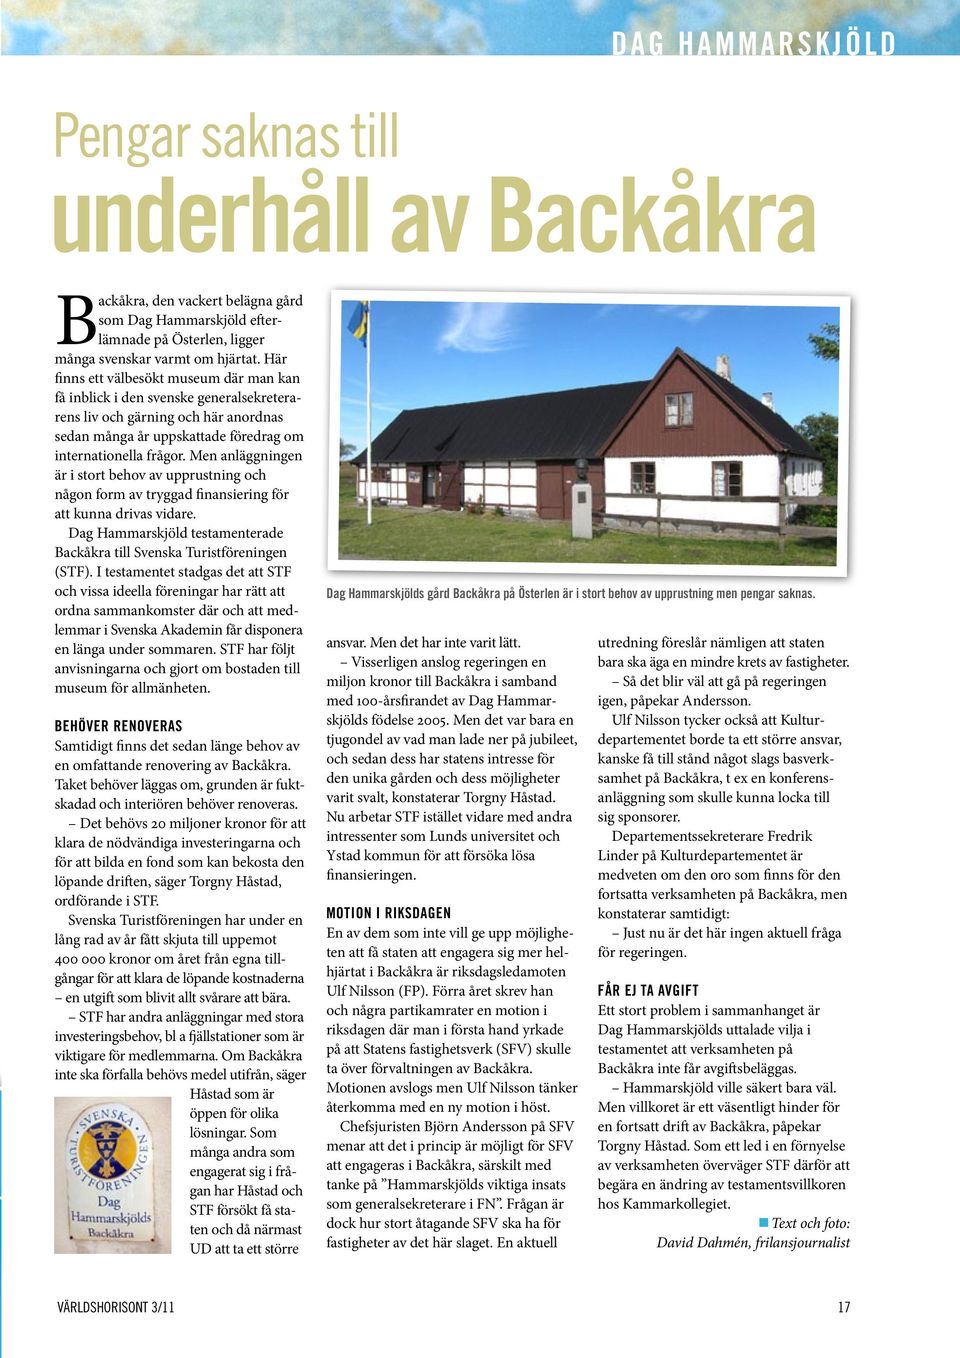 Men anläggningen är i stort behov av upprustning och någon form av tryggad finansiering för att kunna drivas vidare. Dag Hammarskjöld testamenterade Backåkra till Svenska Turistföreningen (STF).